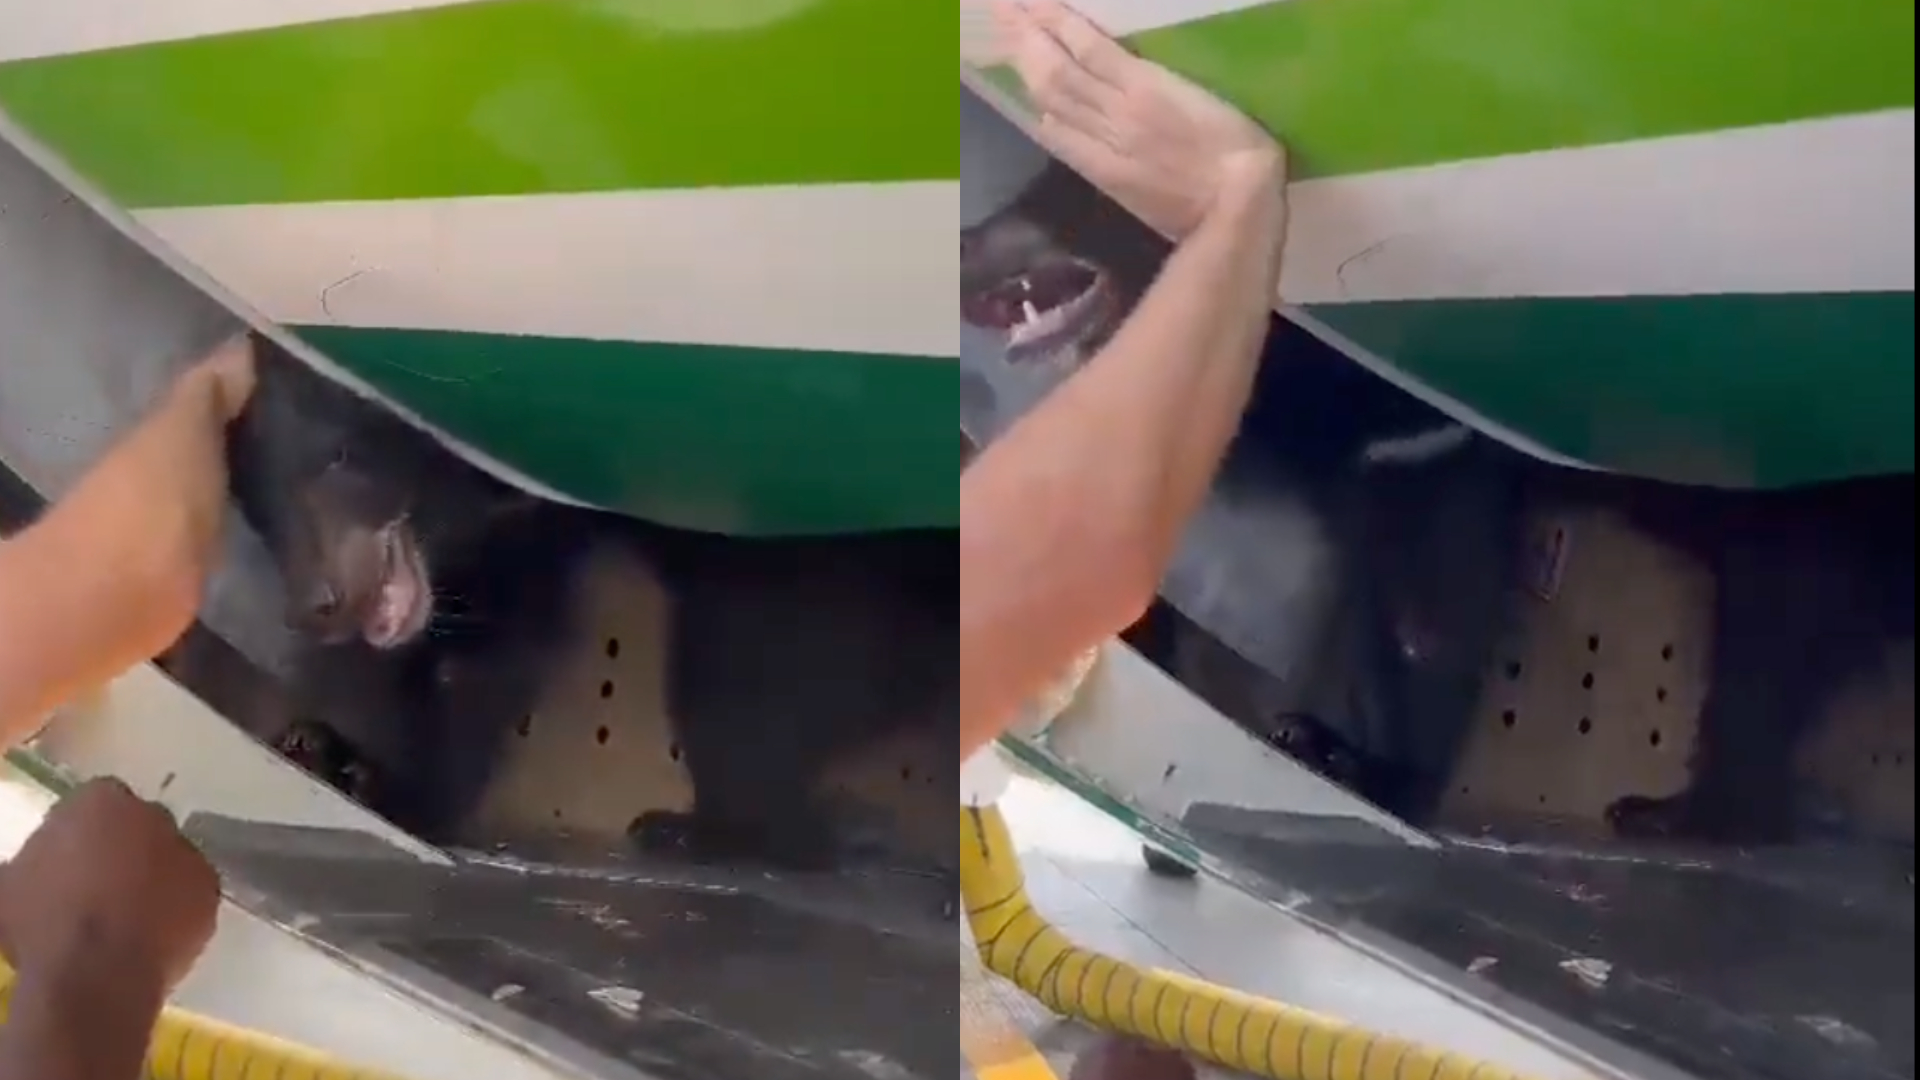 Vídeo: Urso escapa de caixa em bagageiro de avião em Dubai, e passageiros precisam deixar aeronave